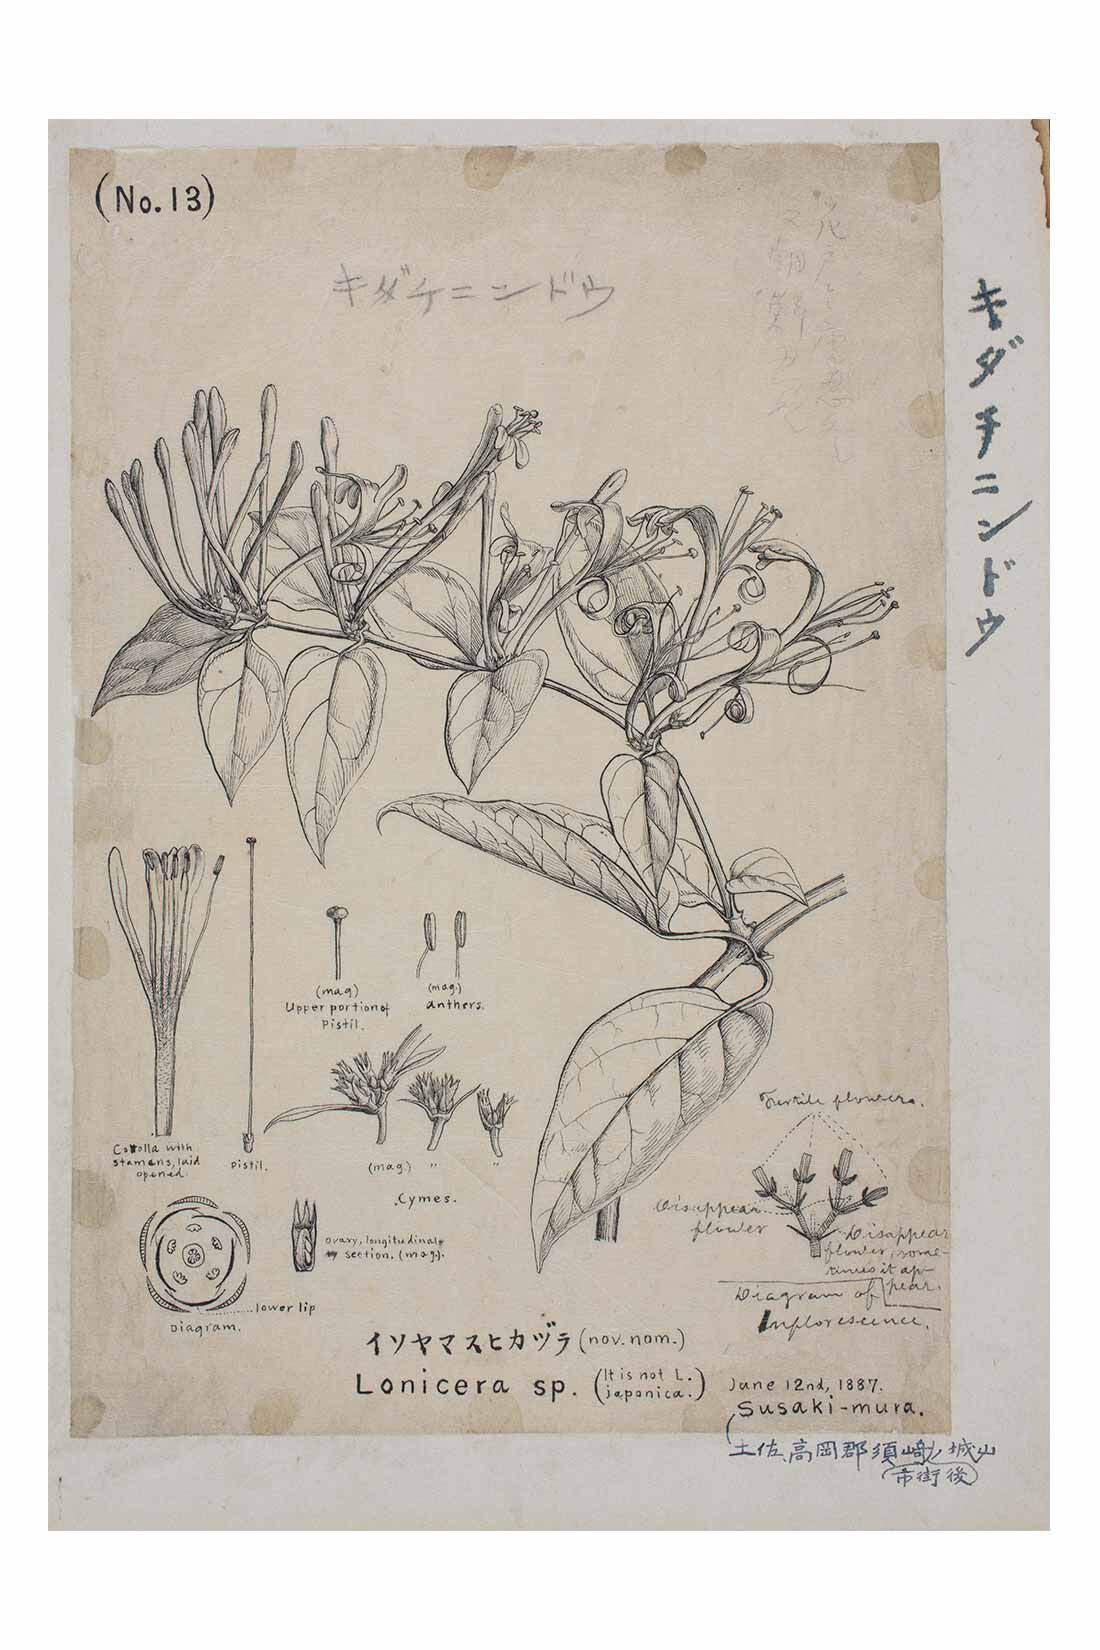 イディット|牧野植物園×IEDIT[イディット]コラボ 牧野博士の描いたキダチニンドウのトートバッグ〈ブラウン〉|1887年 明治時代に和紙に筆で描かれた「キダチニンドウ」